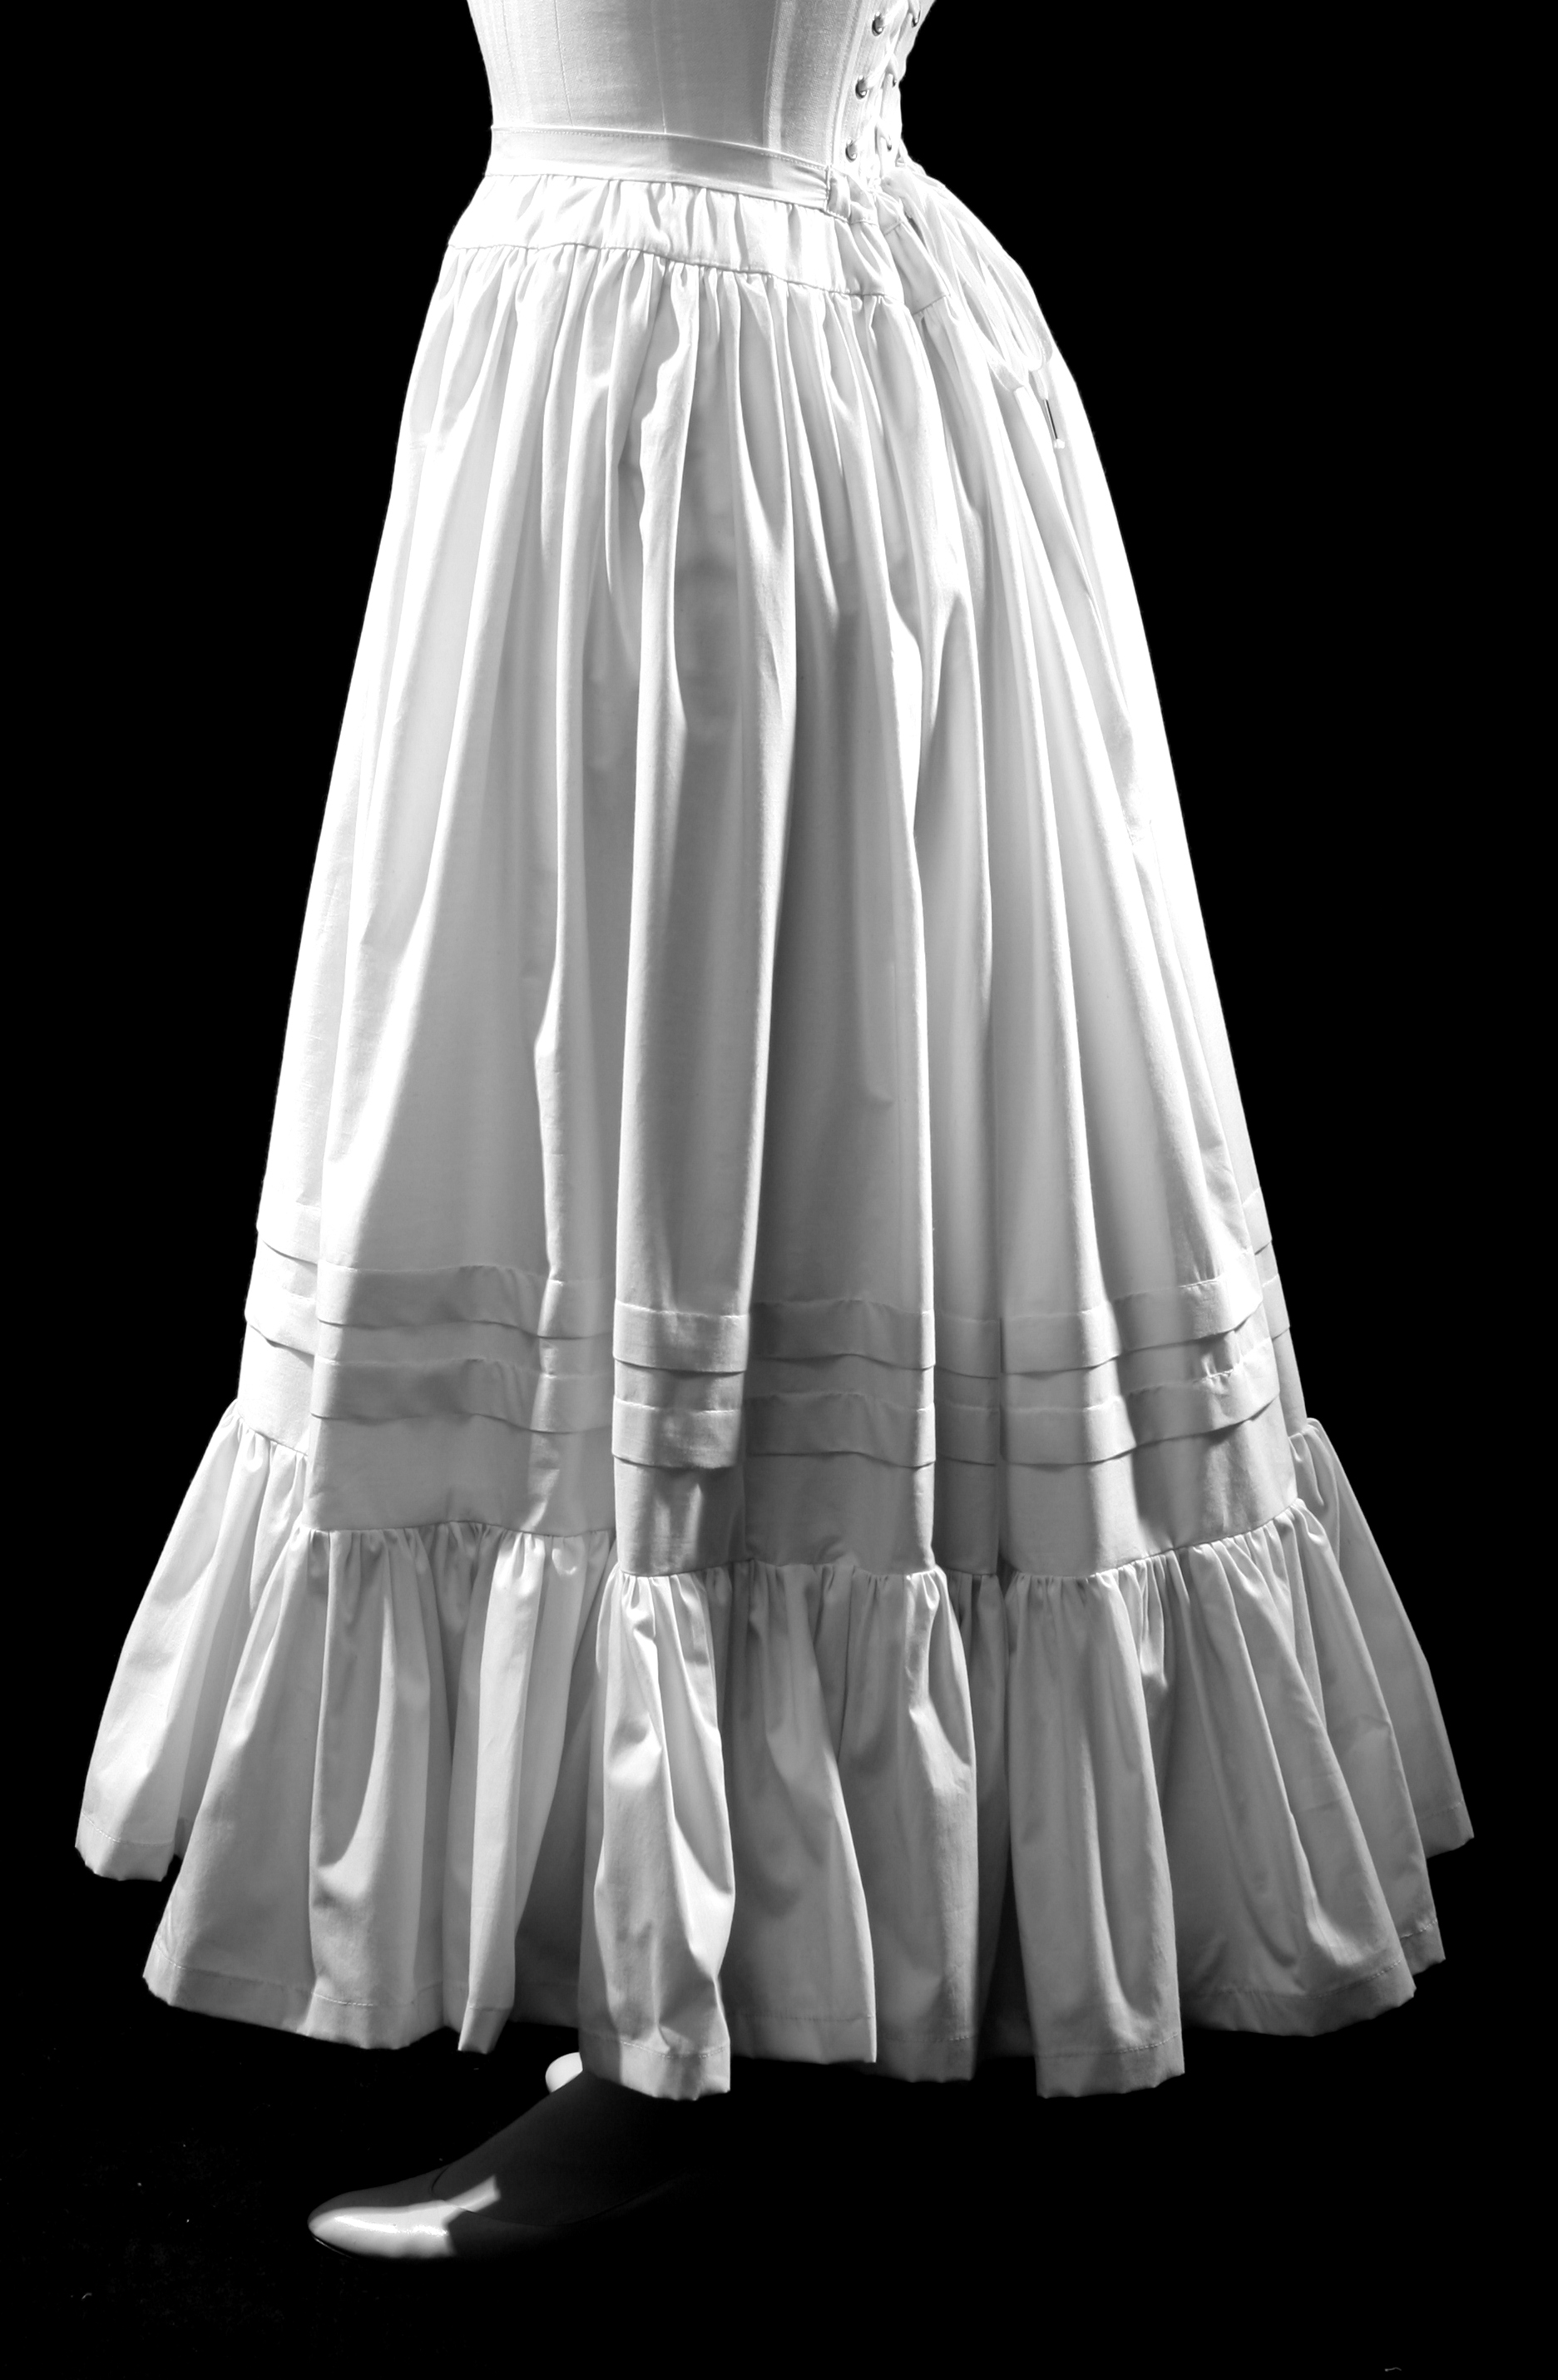 Petticoats — Period Corsets